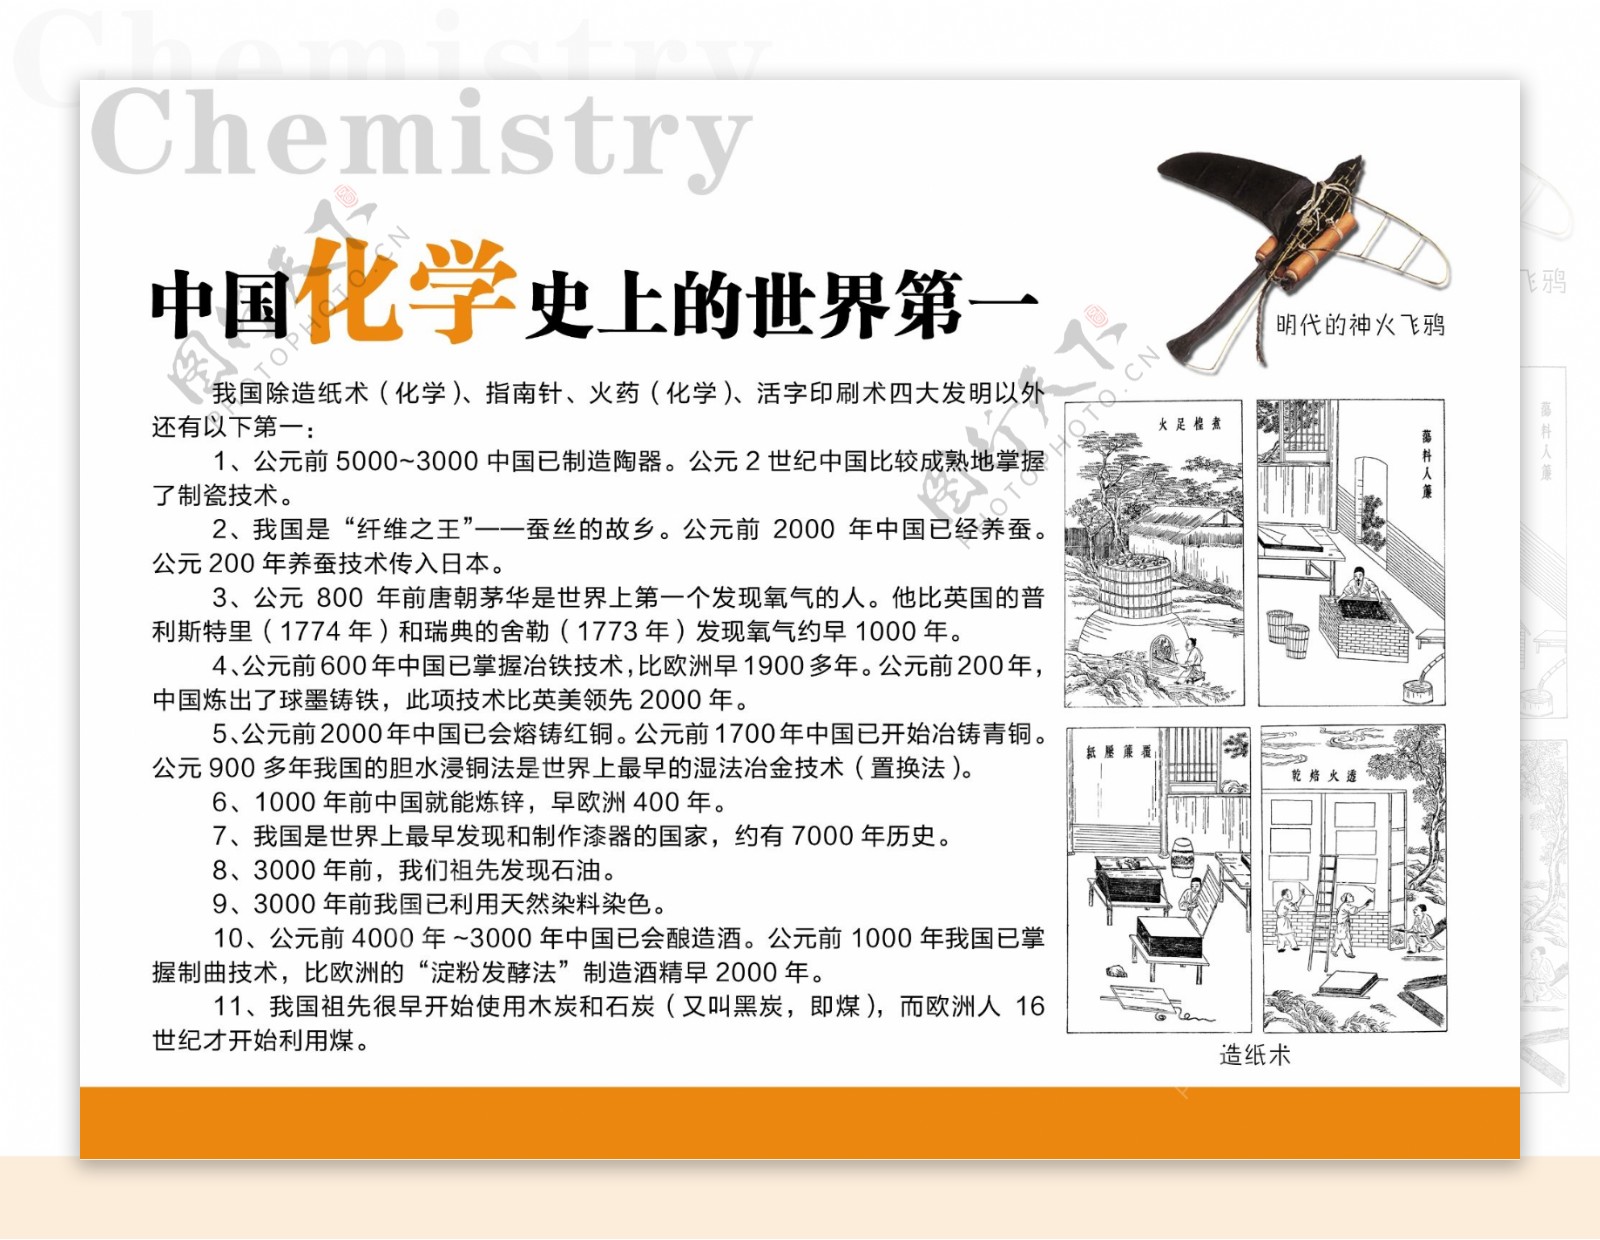 中国化学史图片